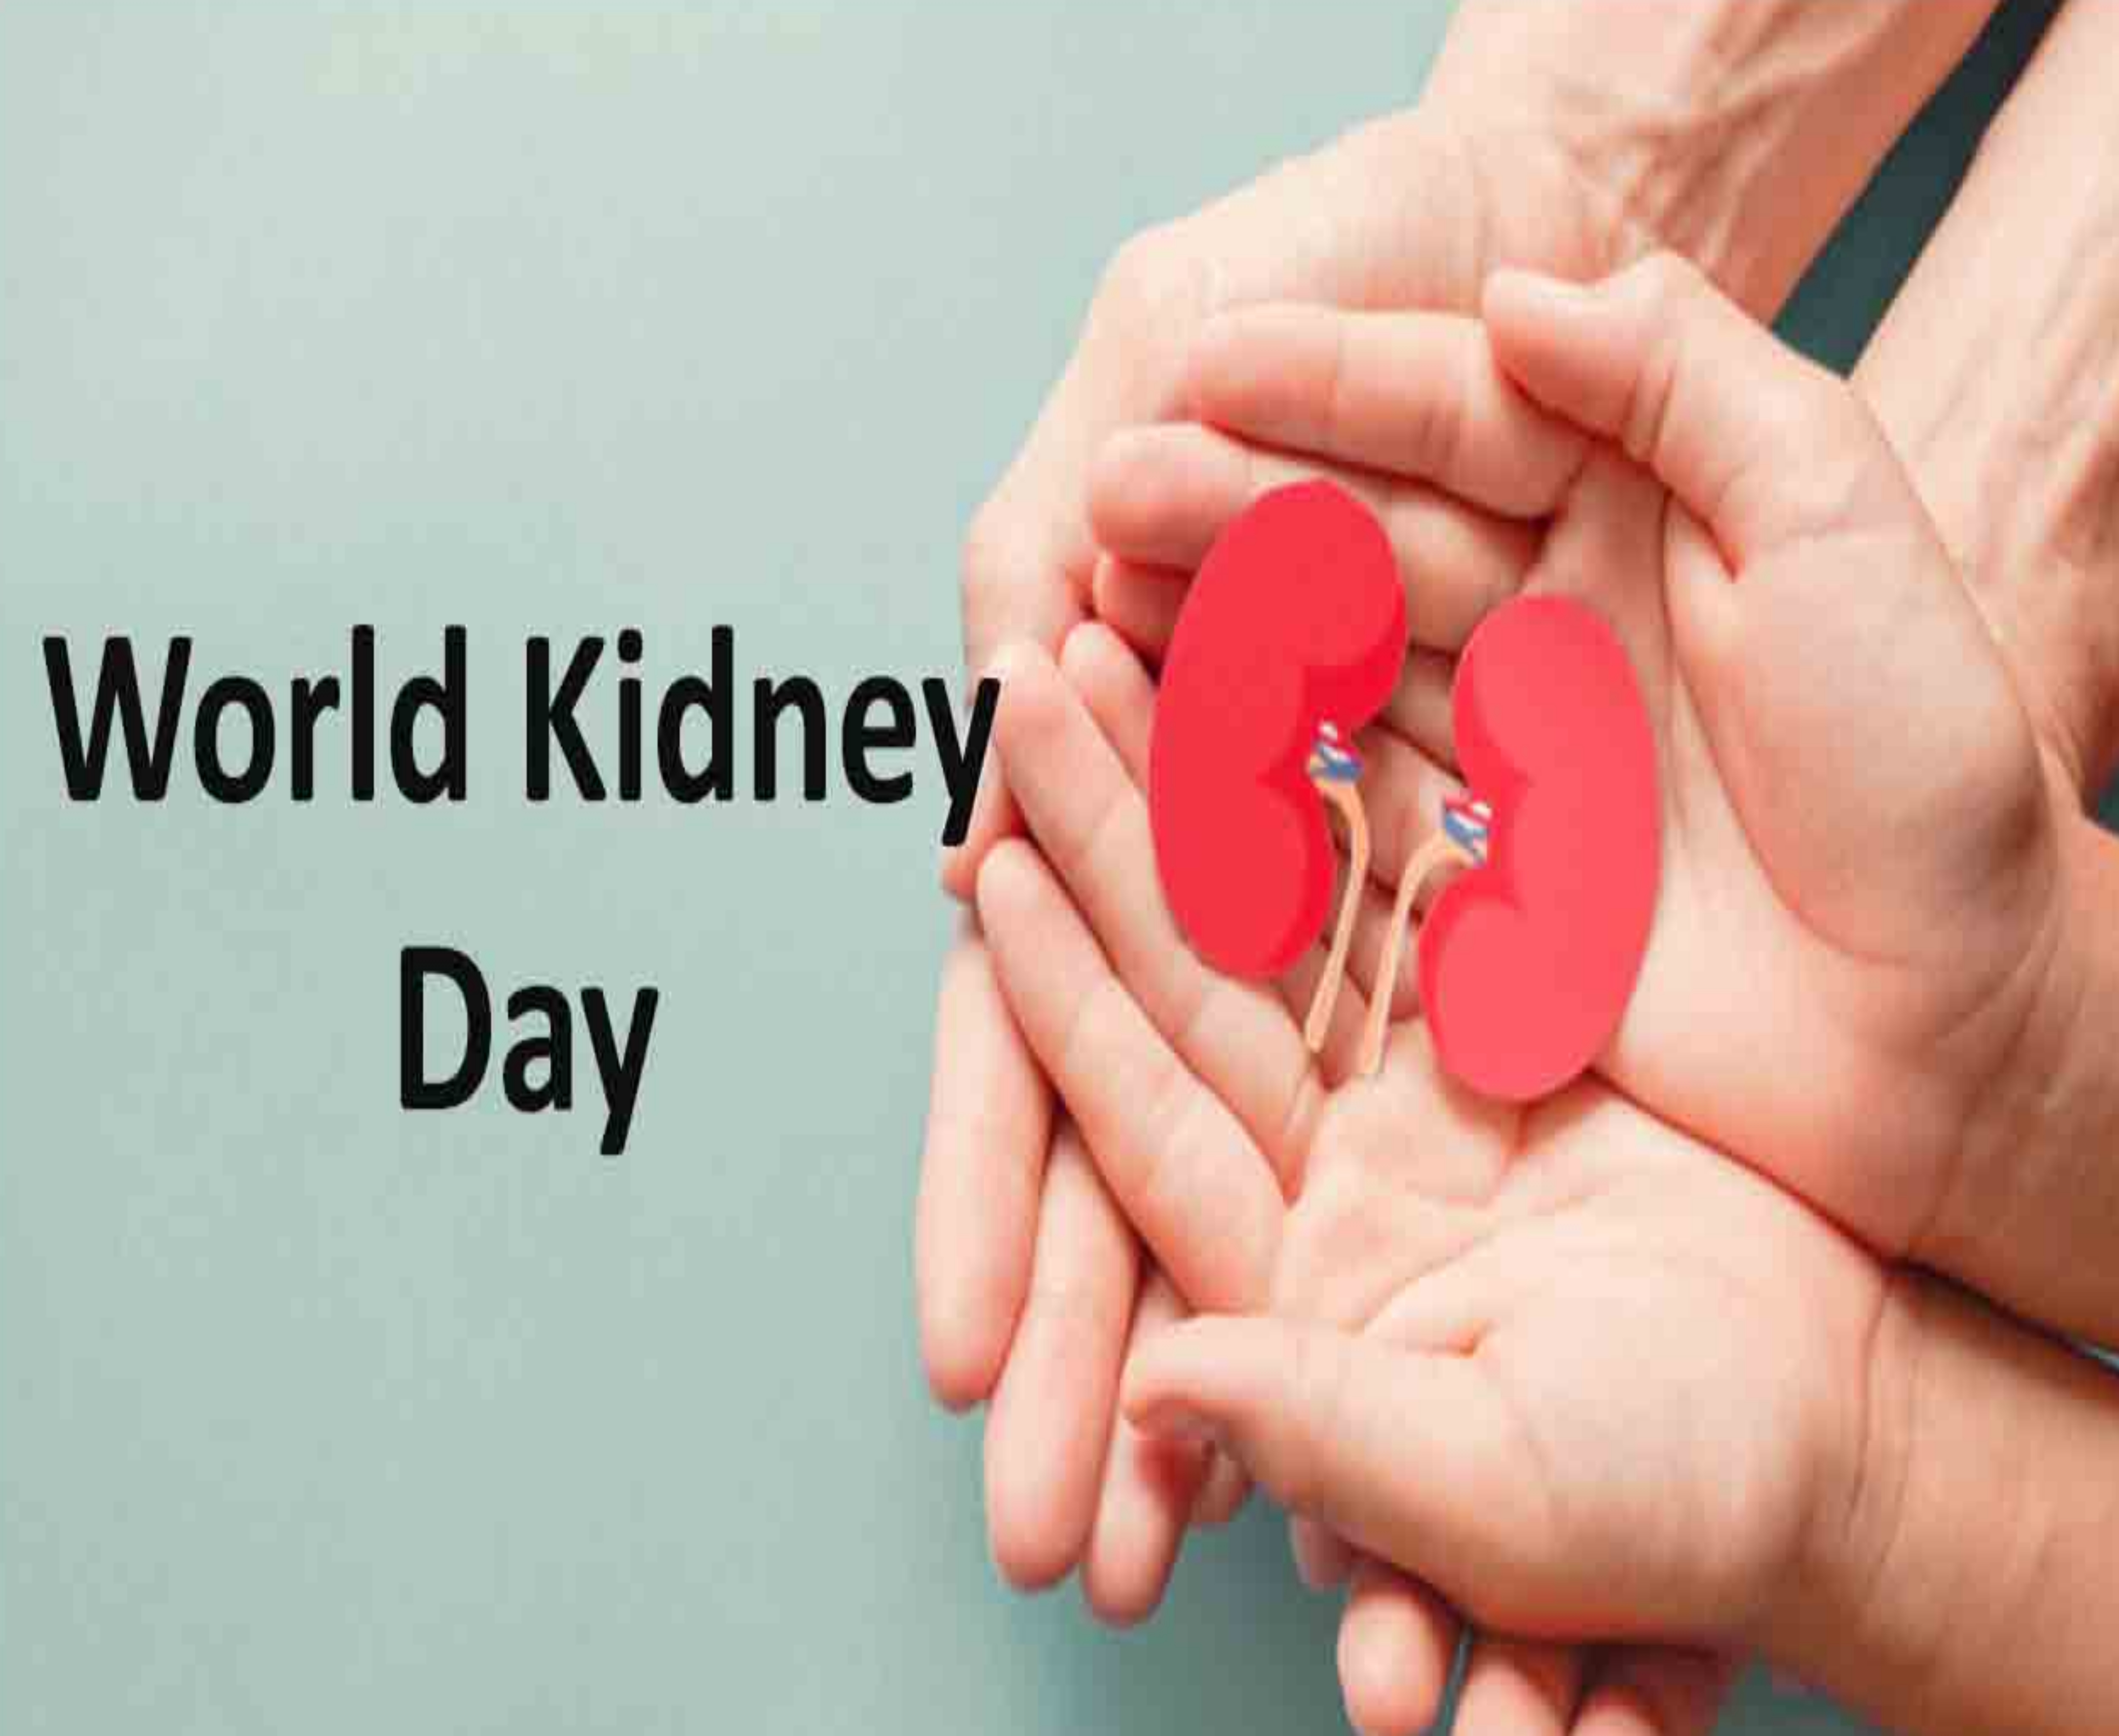 World Kidney Day 2021: ये कारण हैं किडनी से जुड़ी बिमारियों के, जानें इससे बचने के आसान तरीके 